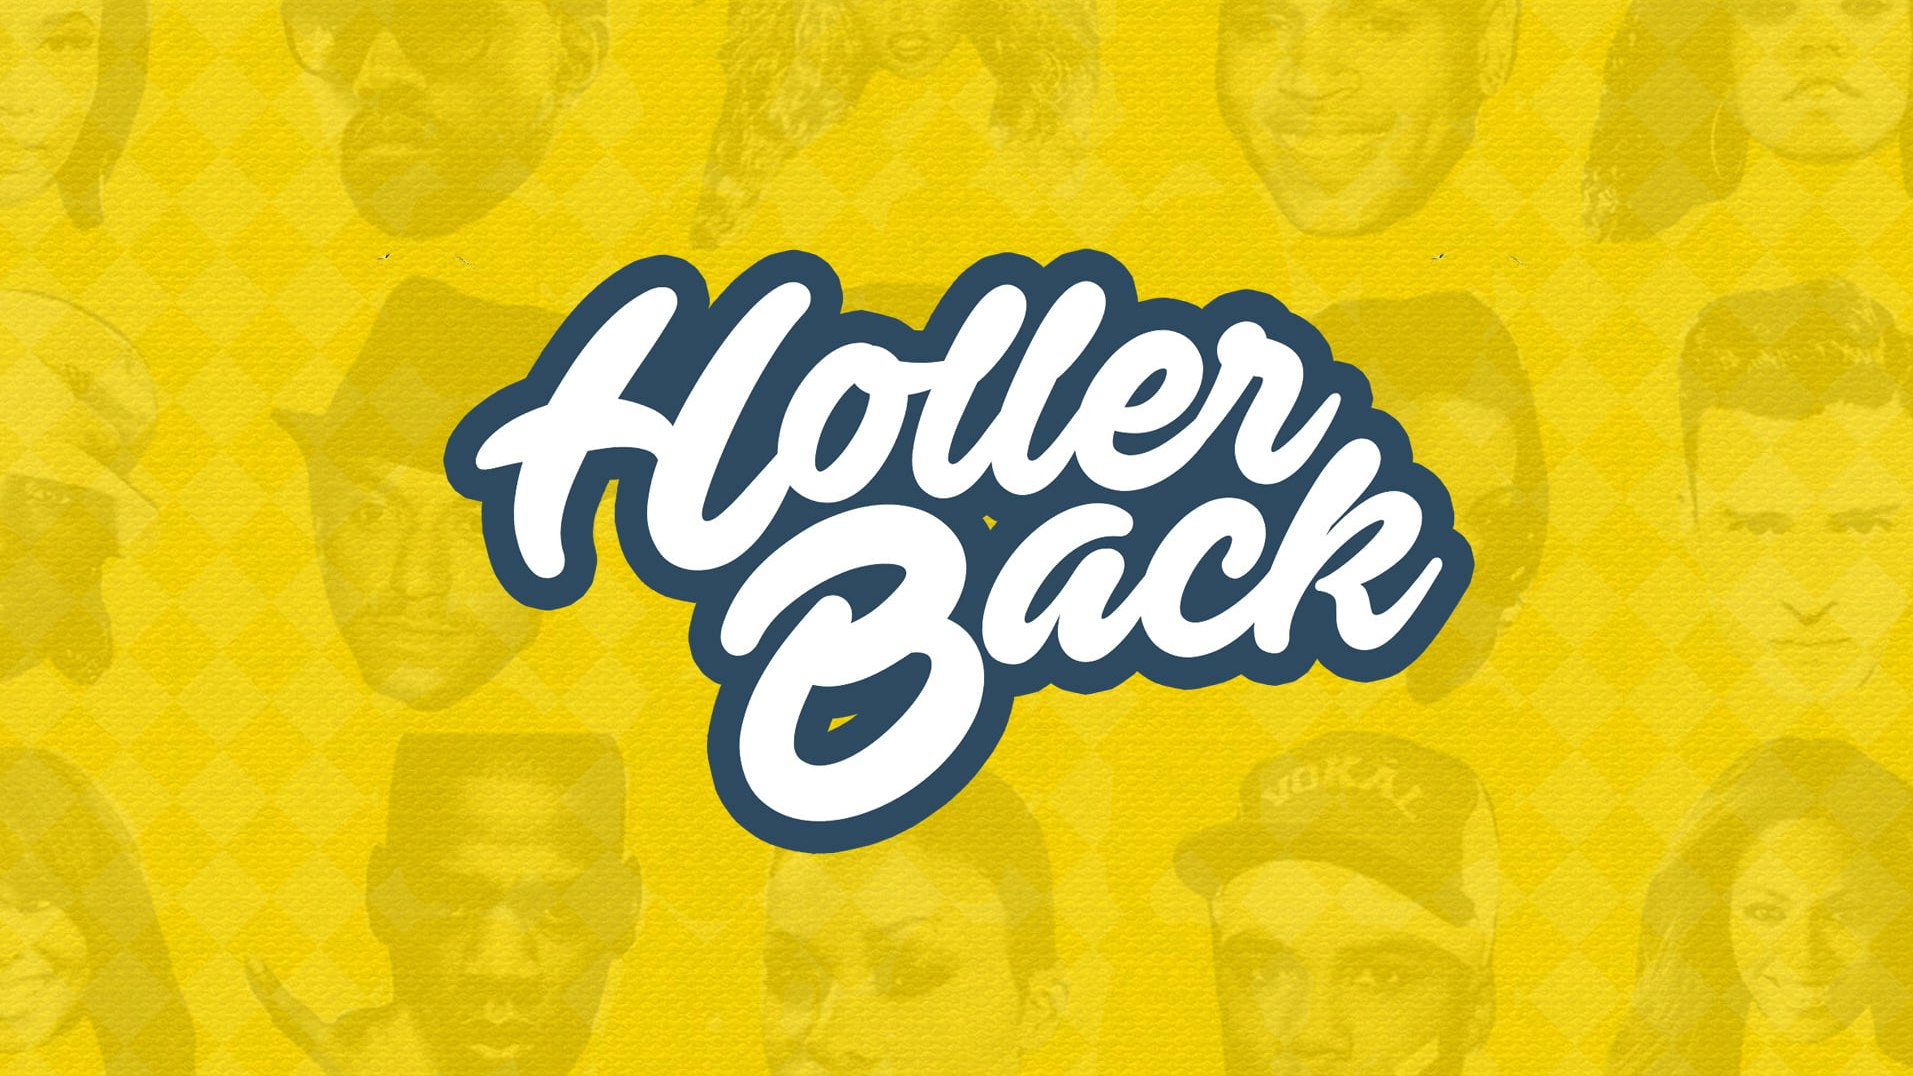 Holler Back – HipHop N’ R&B  | London